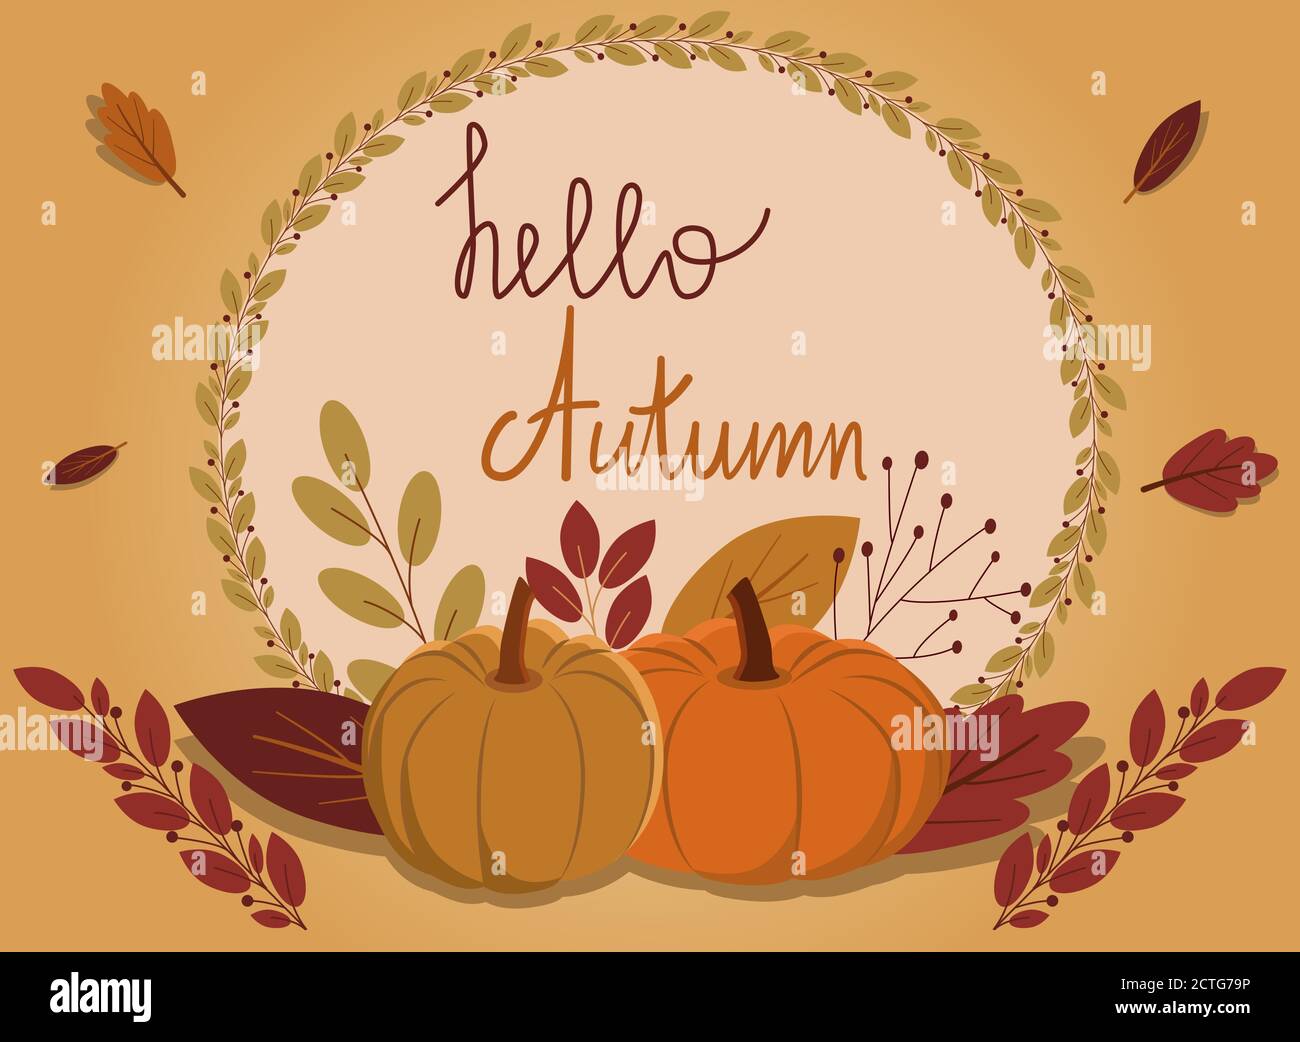 hello autumn Stock Vector